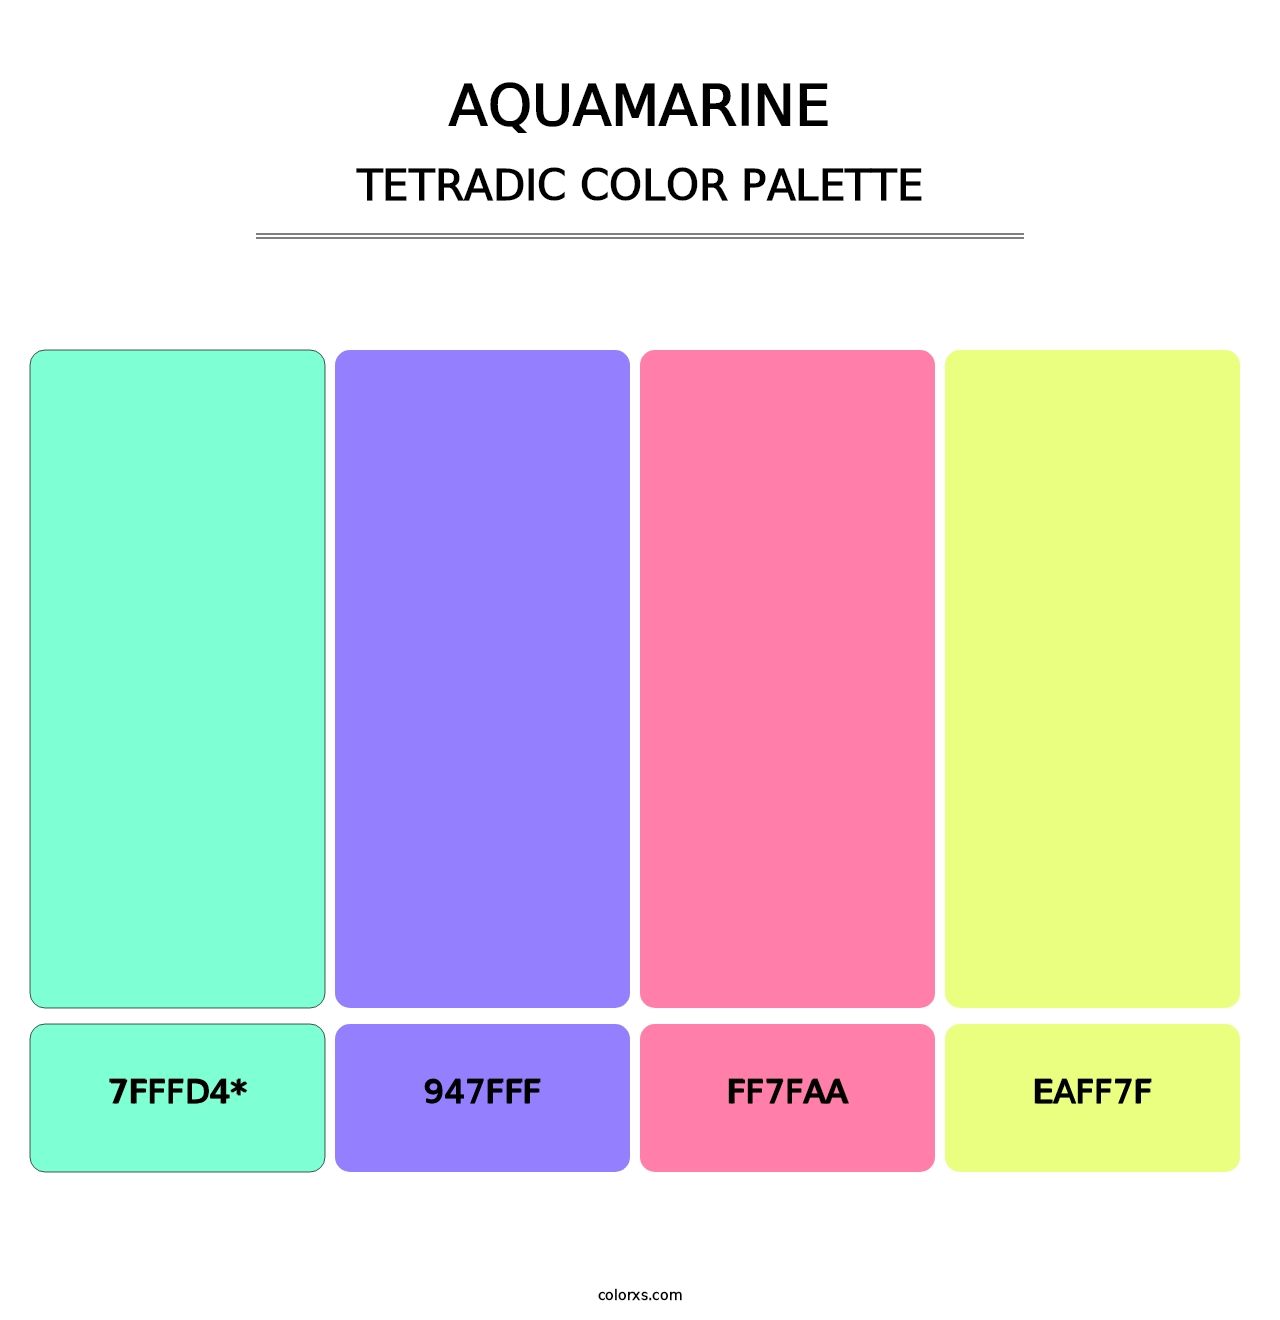 Aquamarine - Tetradic Color Palette